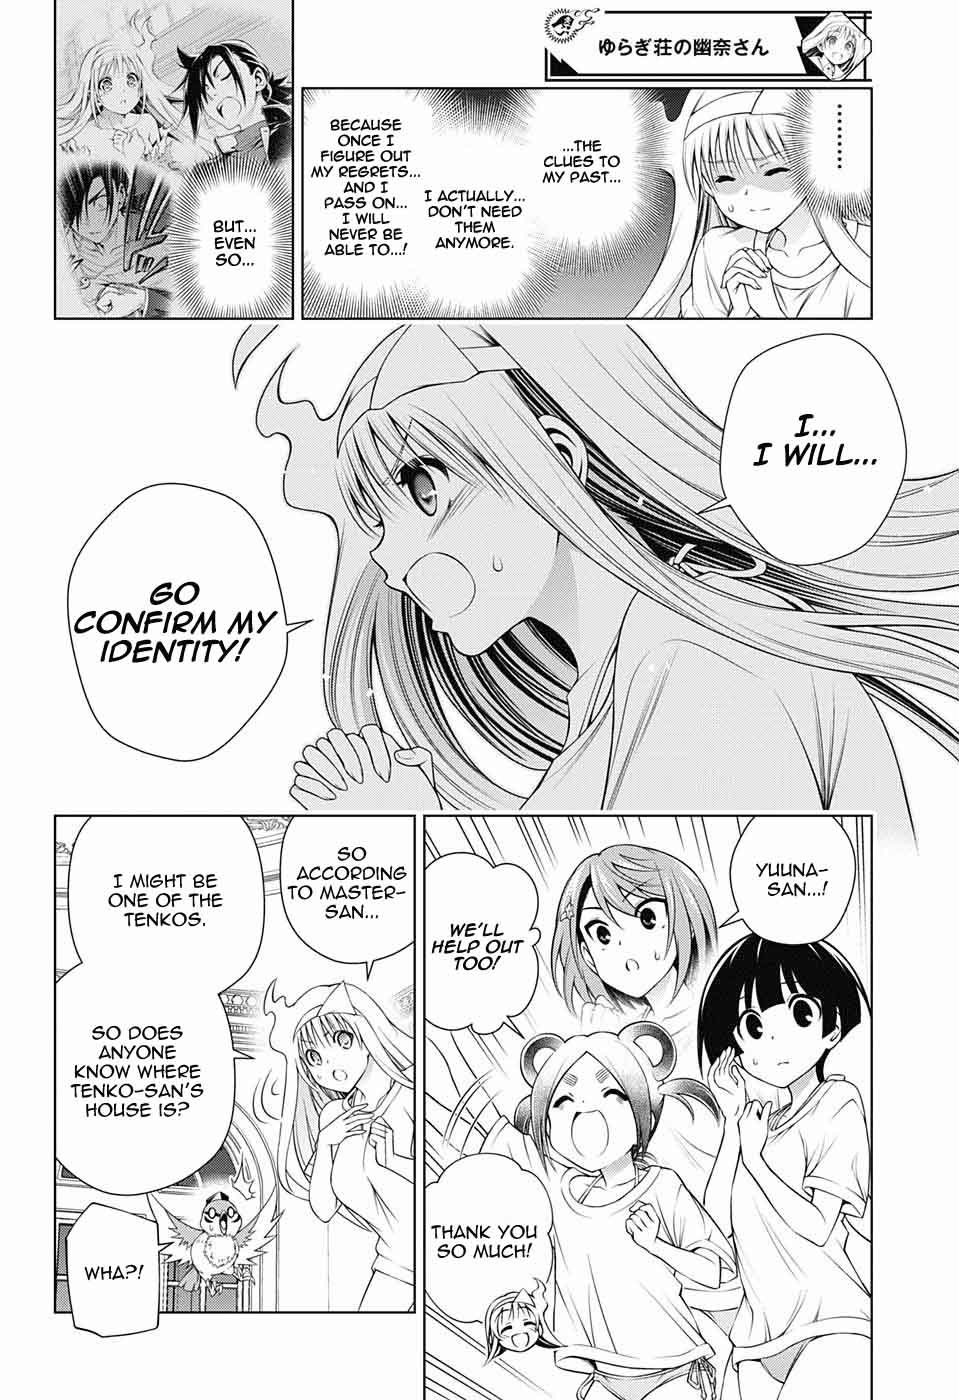 Yuragi Sou No Yuuna San Chapter 121 Page 8